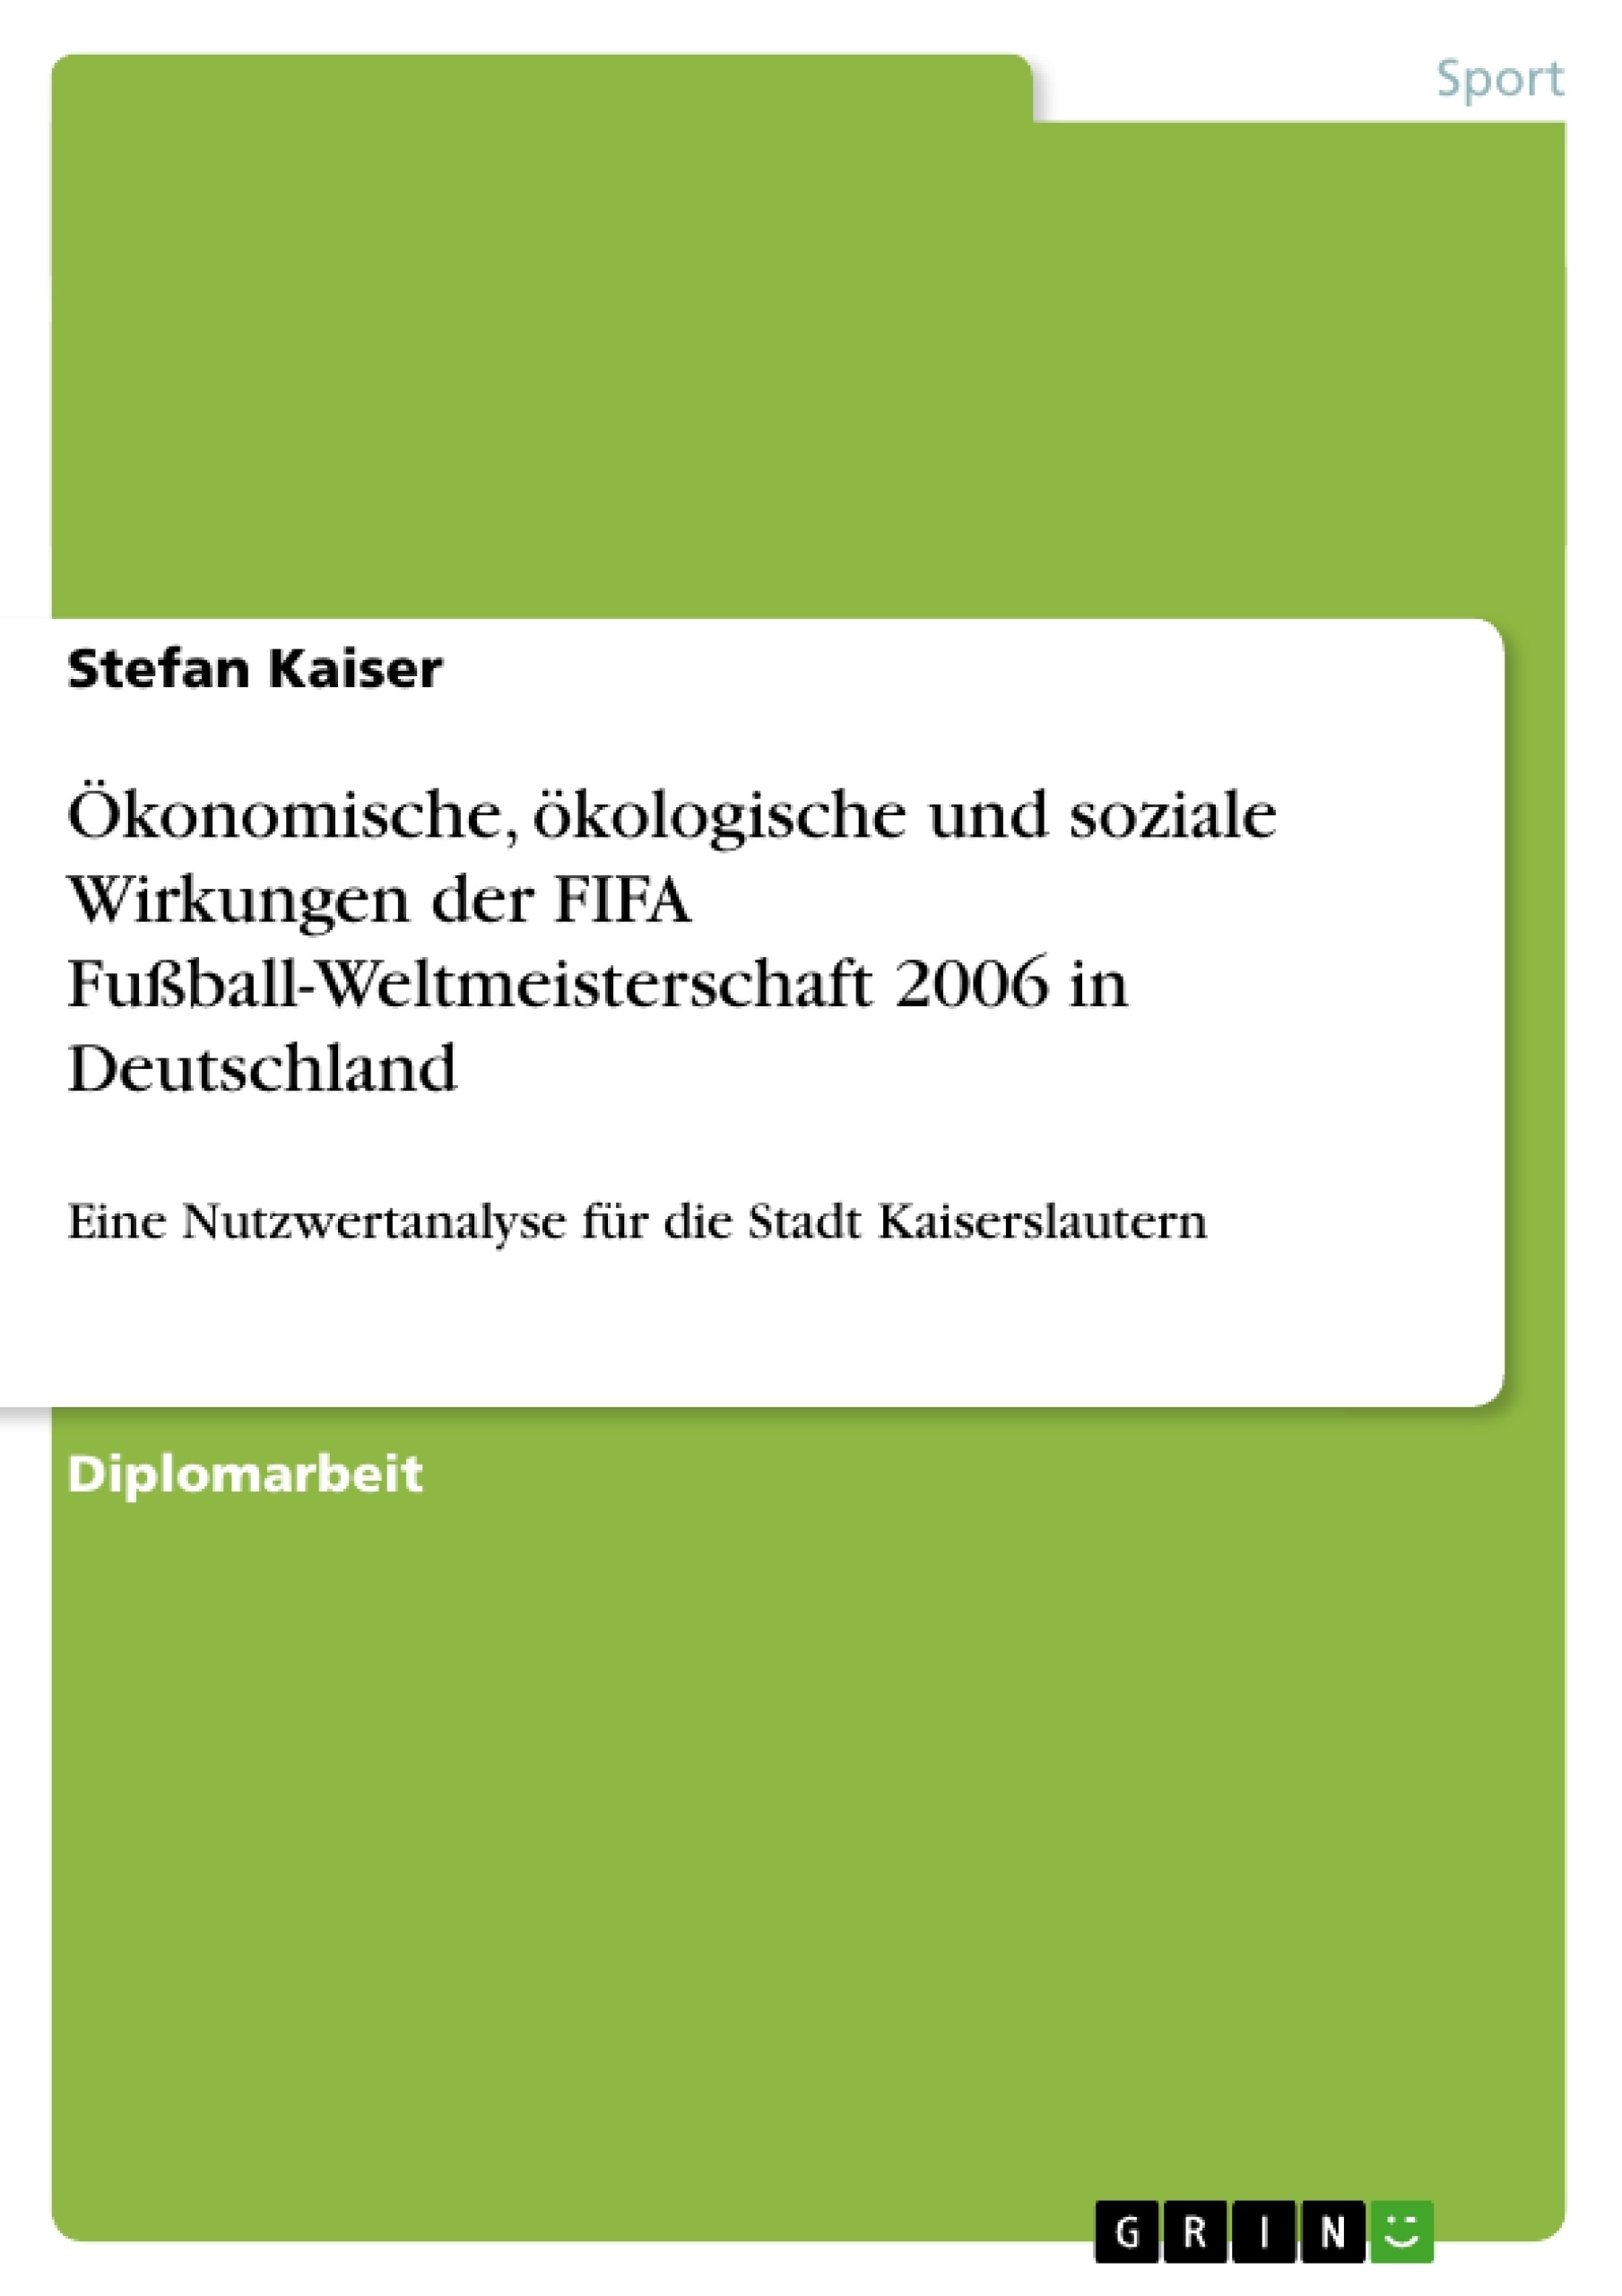 Titel: Ökonomische, ökologische und soziale Wirkungen der FIFA Fußball-Weltmeisterschaft 2006 in Deutschland 